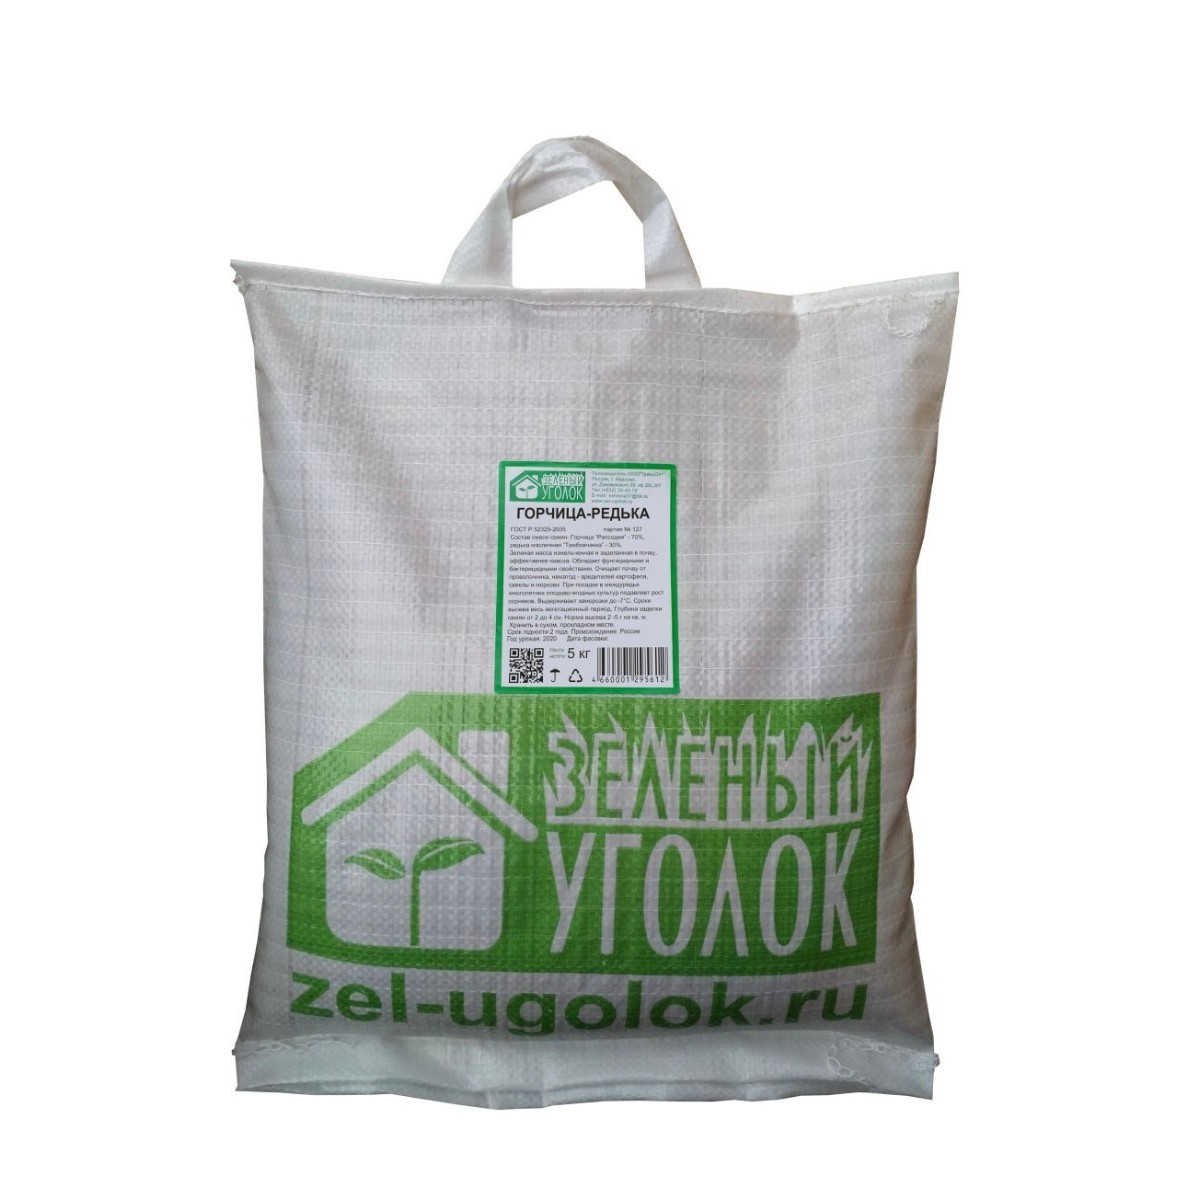 Семена Зеленый Уголок Смесь горчица / редька (70/30) 5 кг.